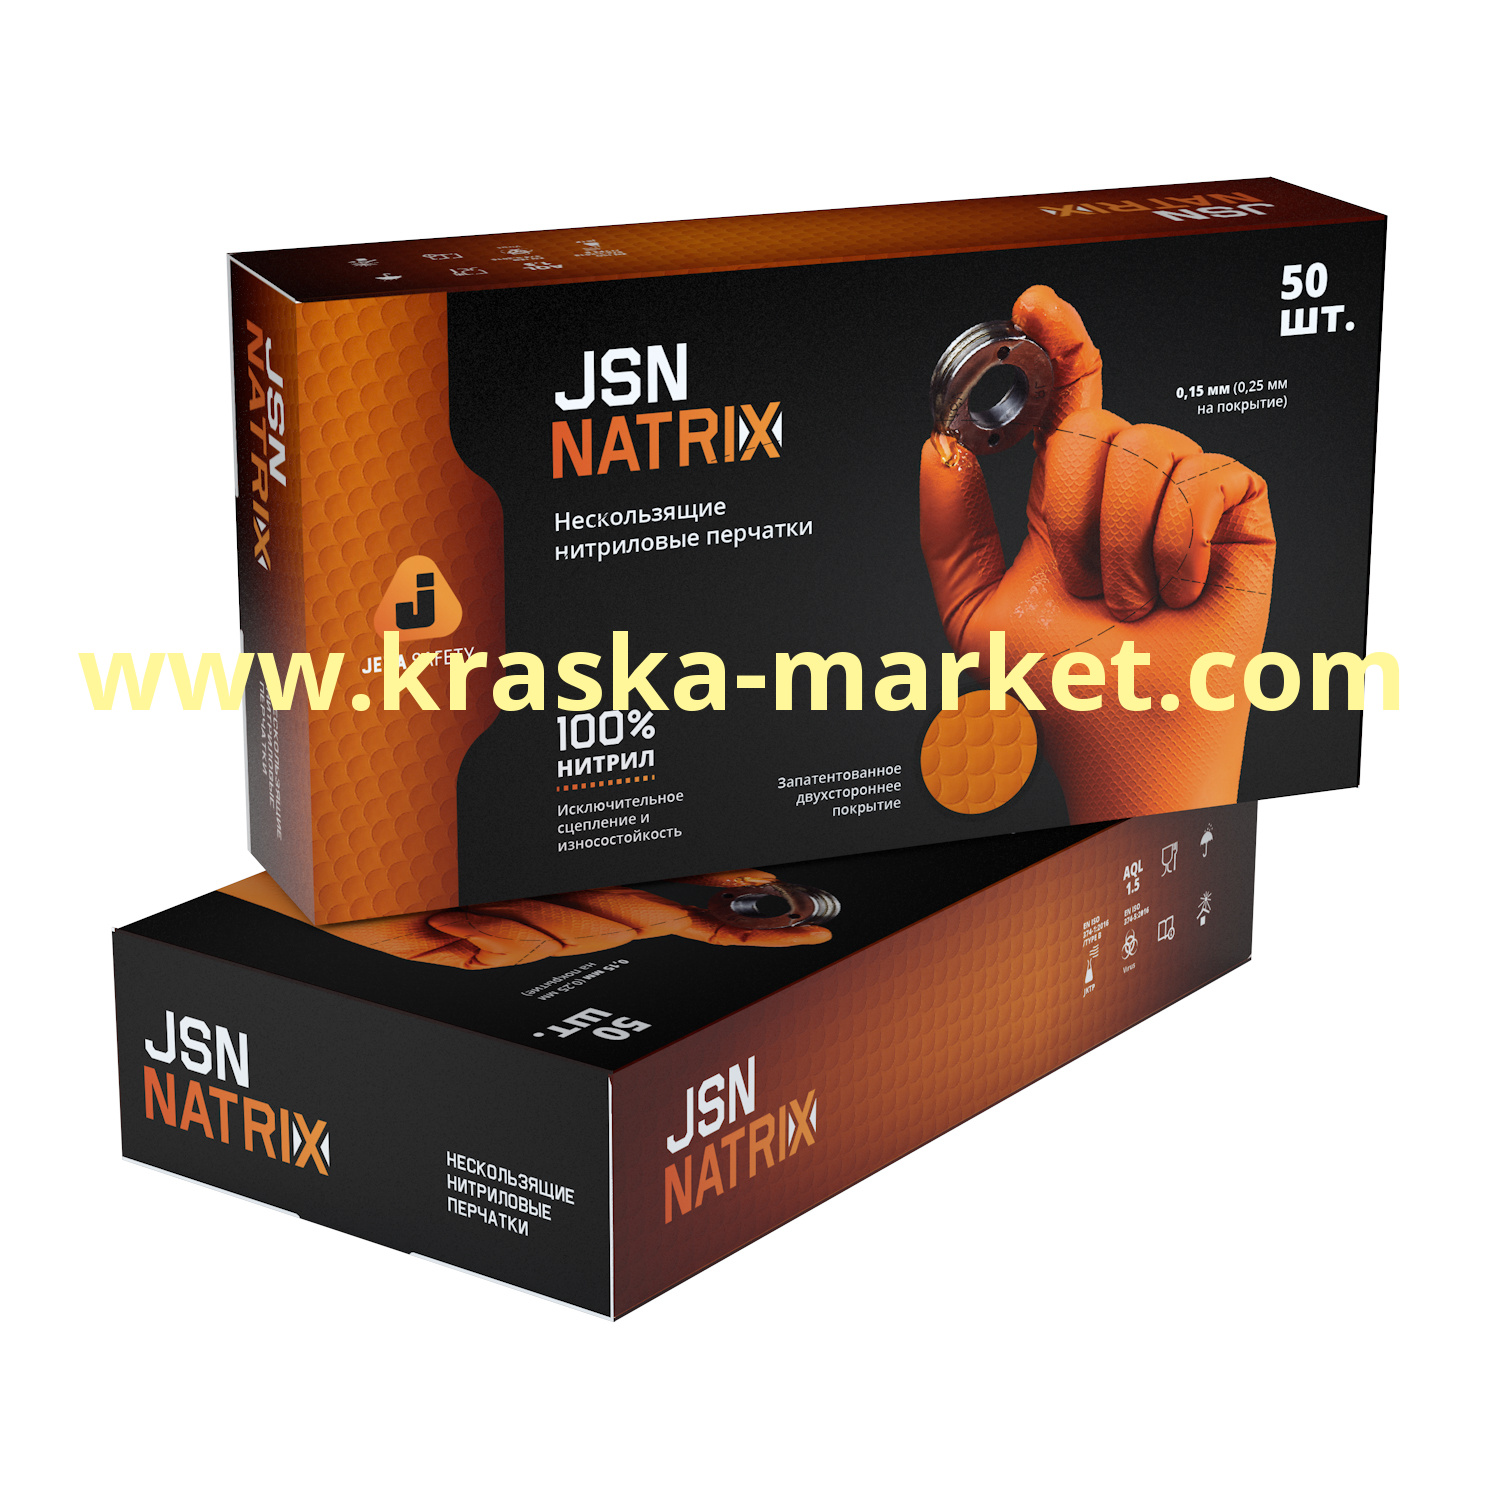 Перчатки нитриловые износостойкие оранжевые для малярных работ JSN NATRIX. Размер: M. Упаковка: 50 штук (25 пар). Состав: 100% нитрил. Торговая марка: JetaPro.